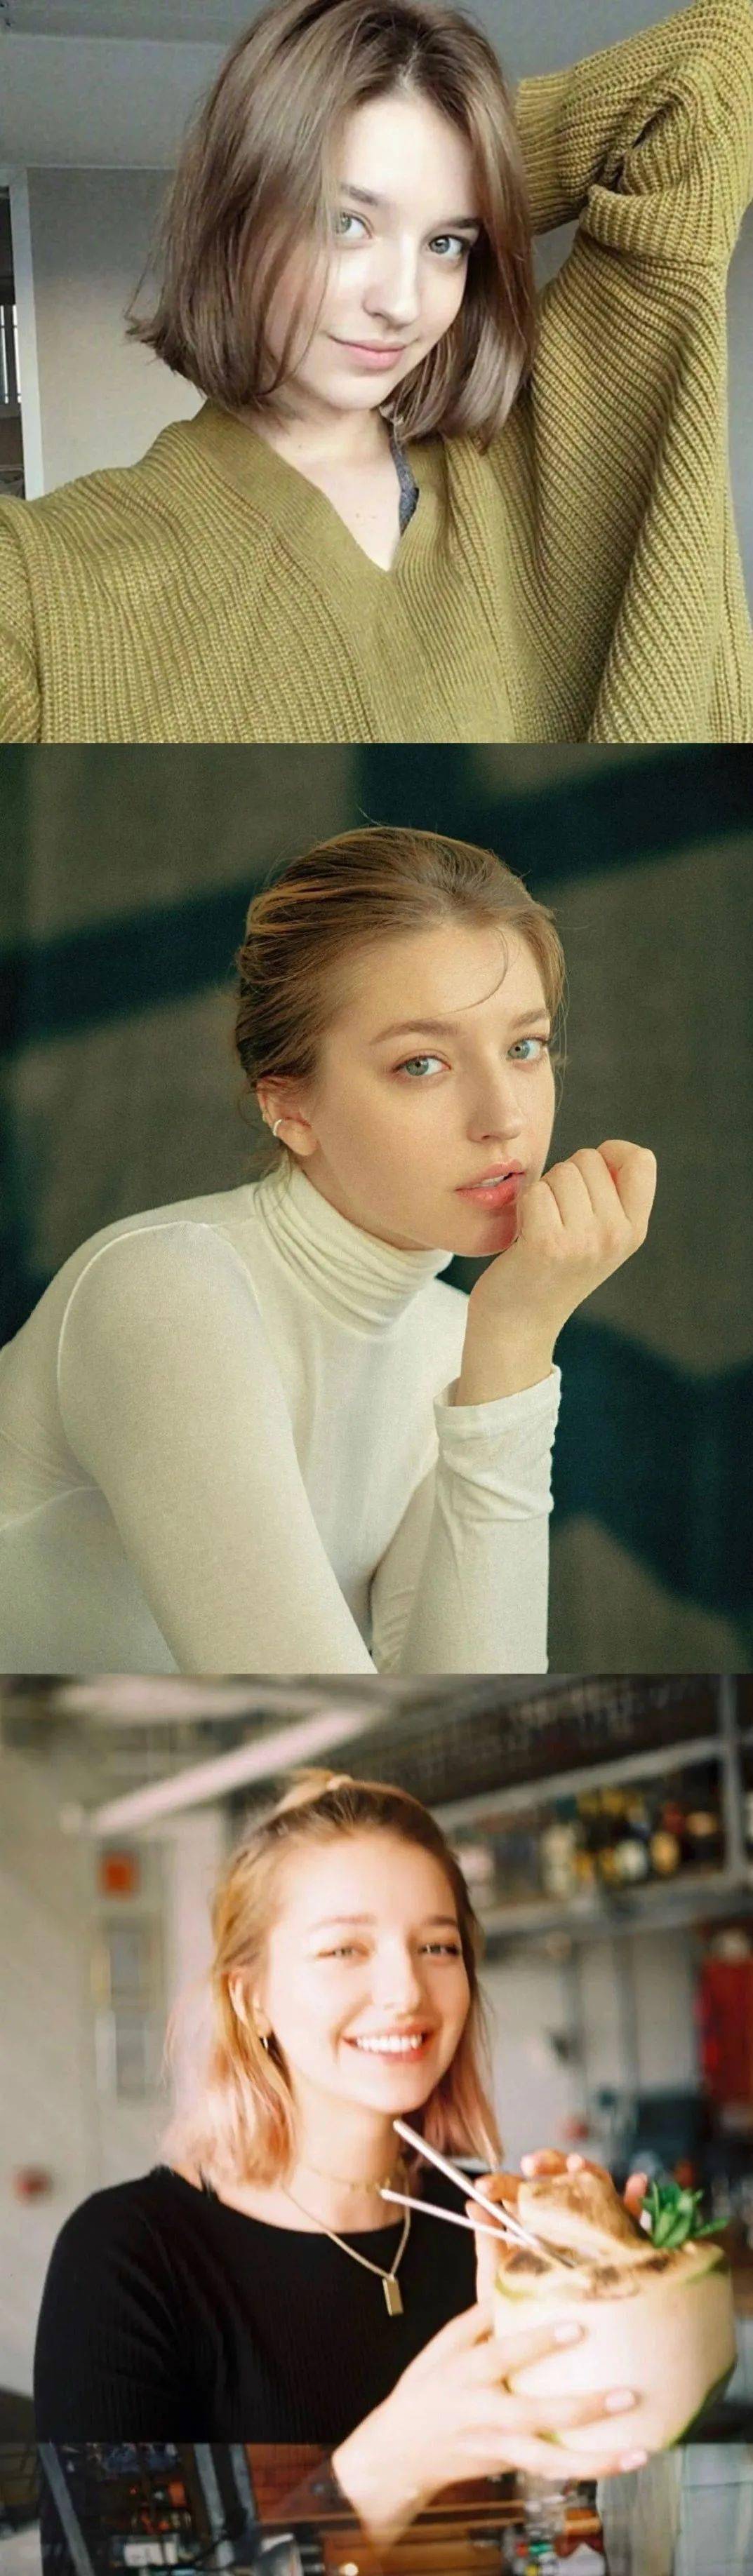 俄罗斯女模特最美图片